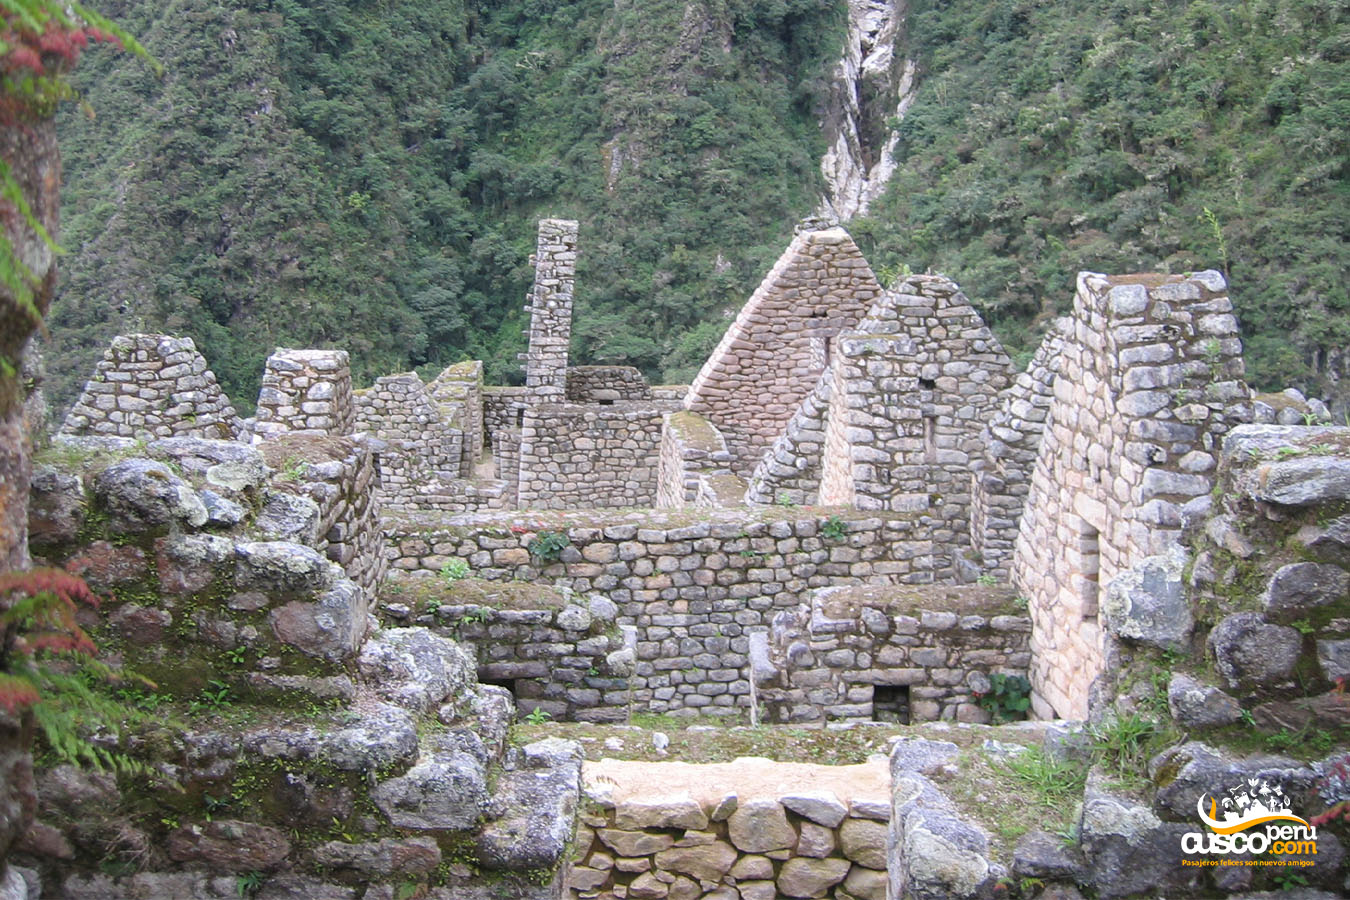 Wiñayhuyna, Camino Inca. Fuente: CuscoPeru.com